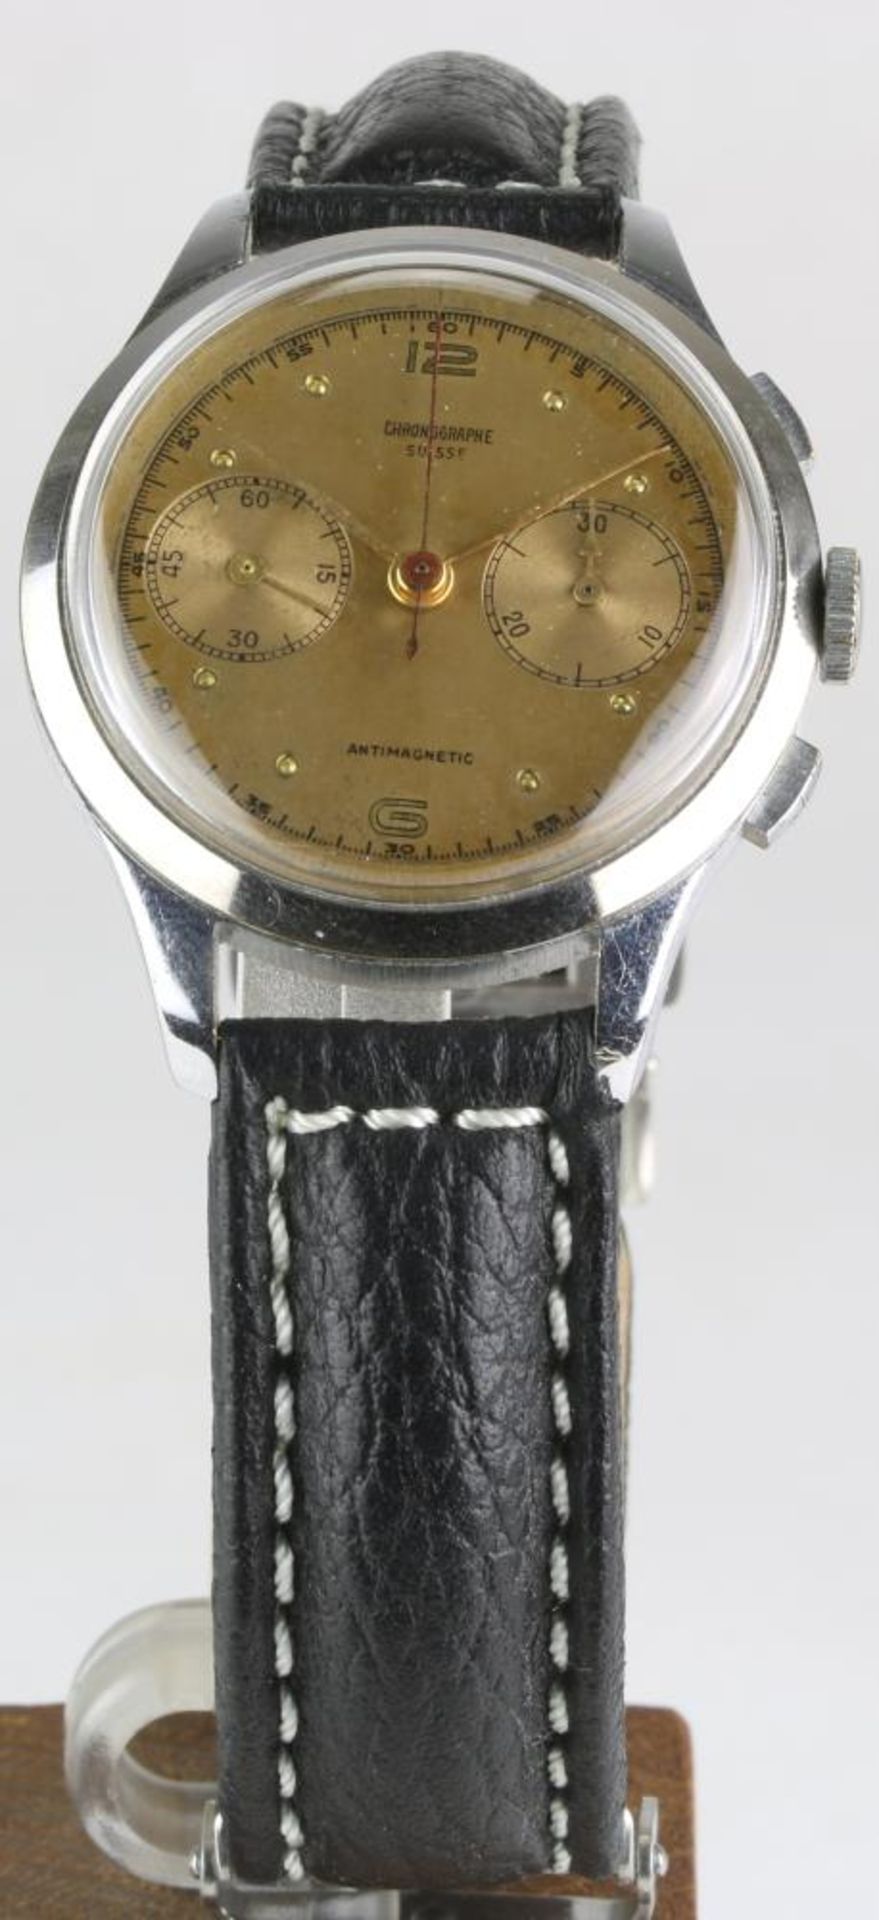 Chronograph 1930-er Jahre. Schweiz. Handaufzugswerk mit Chronographenfunktion im Metallgehäuse mit